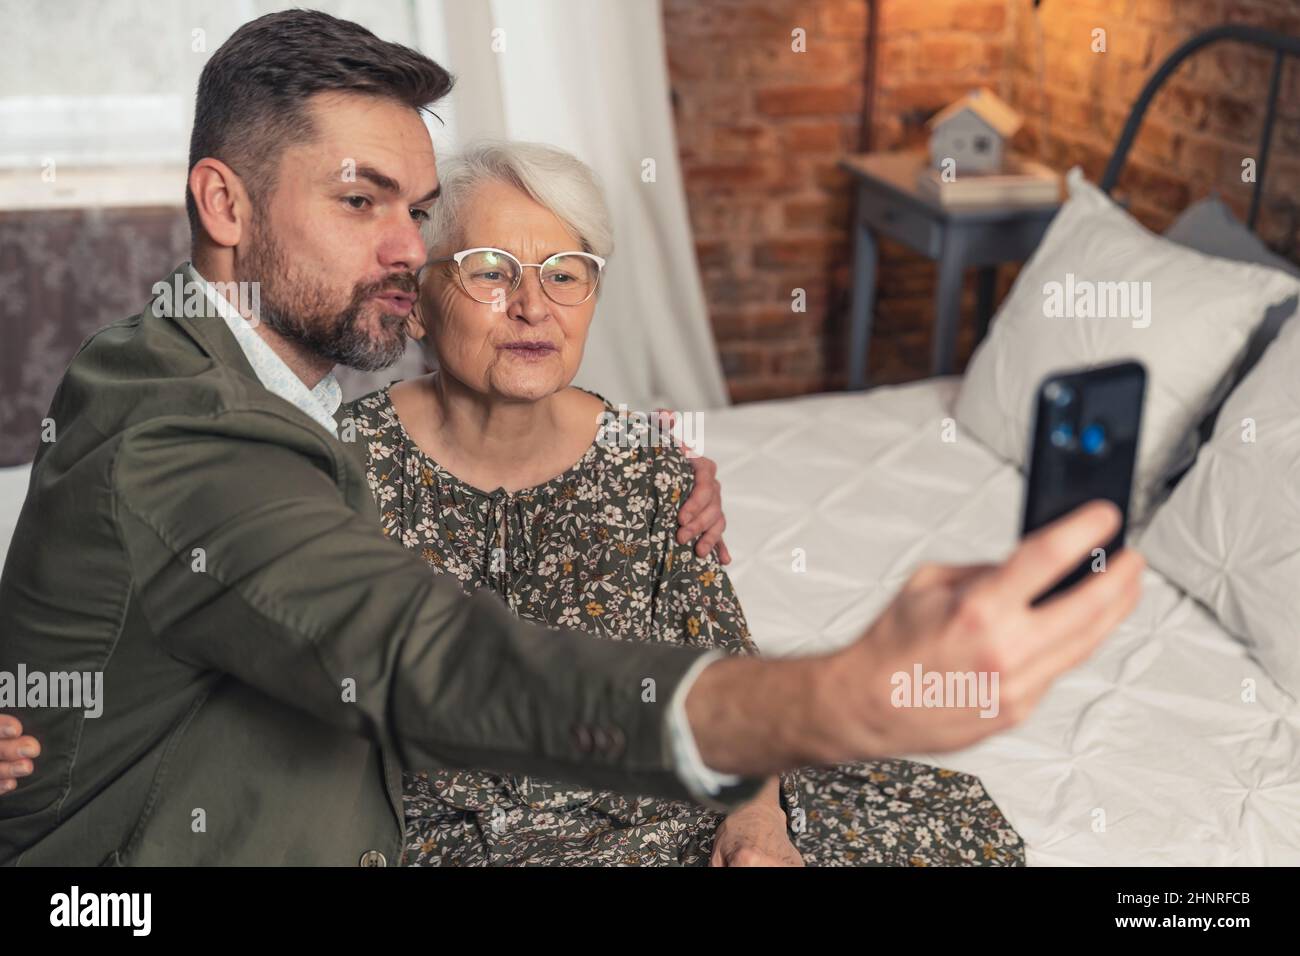 Die kurzhaarige Großmutter und ihr bärtiger Enkel machen Entengesicht und machen ein Selfie während des Großelterntags der Großmutter. Hochwertige Fotos Stockfoto